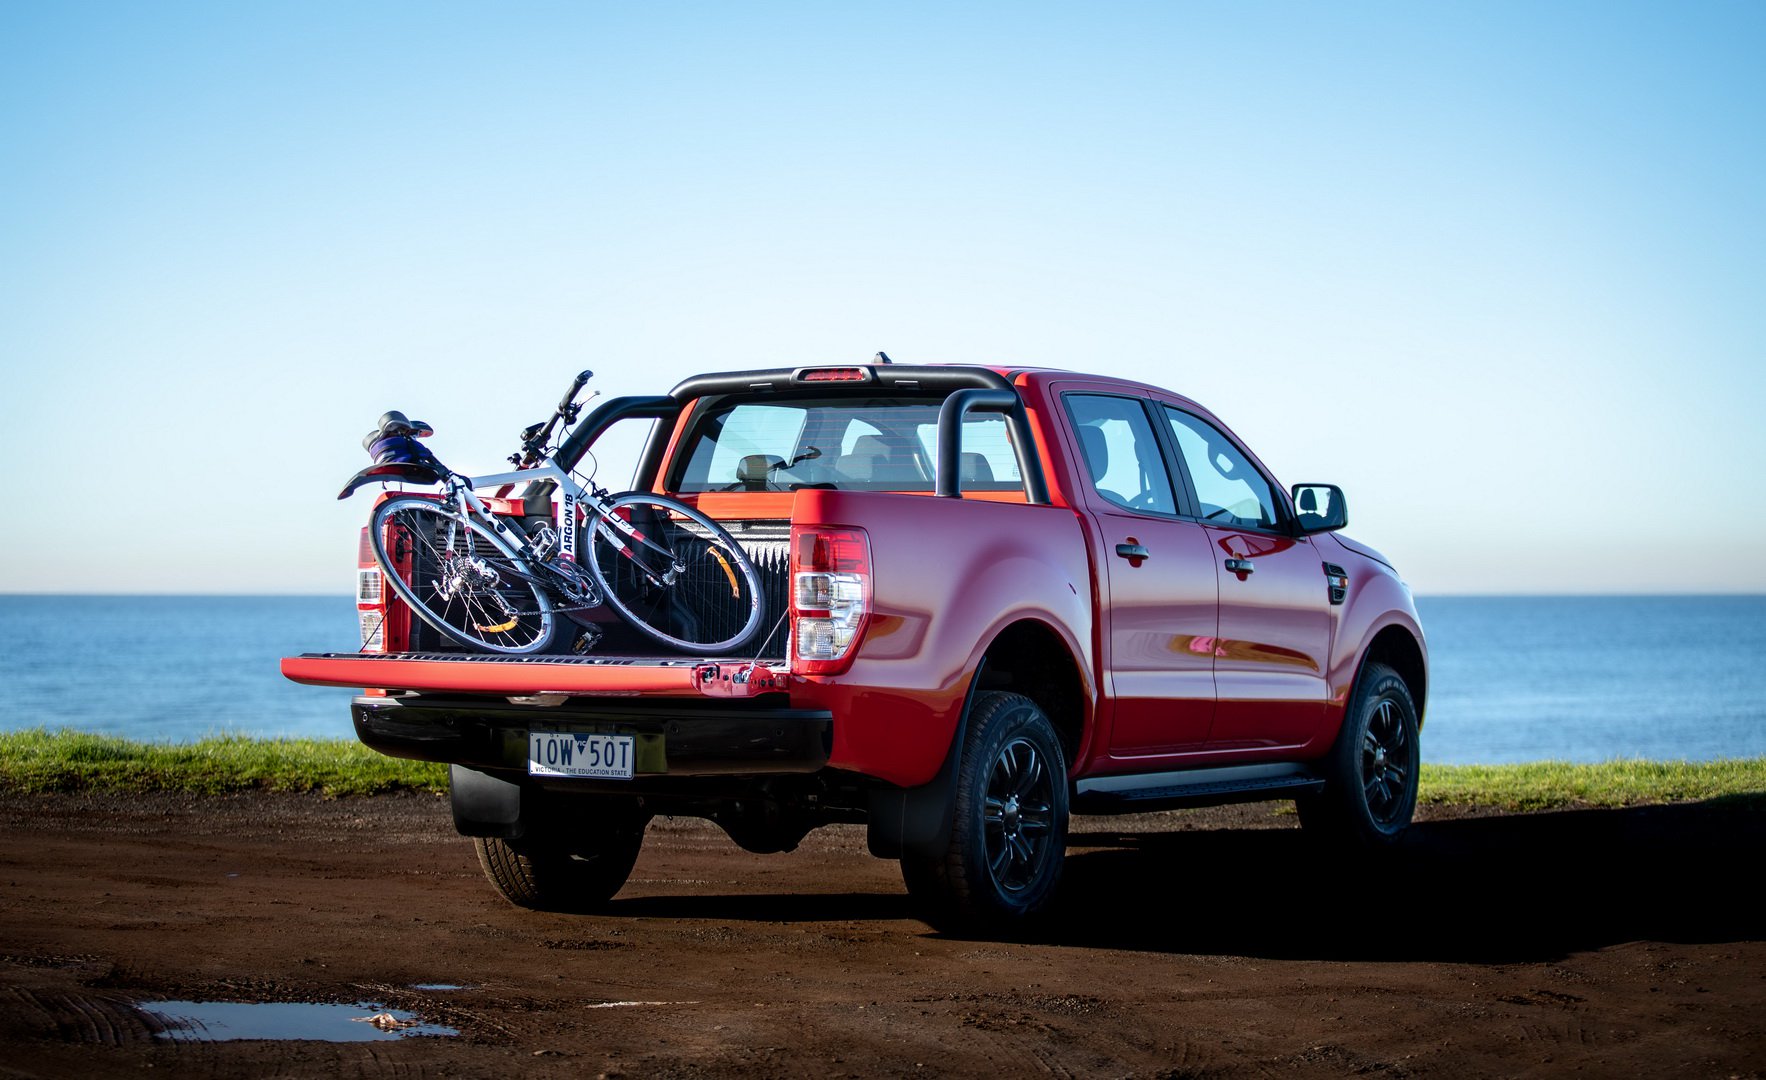 Ford Ranger phiên bản thể thao đặc biệt tại Úc có gì mới lạ?